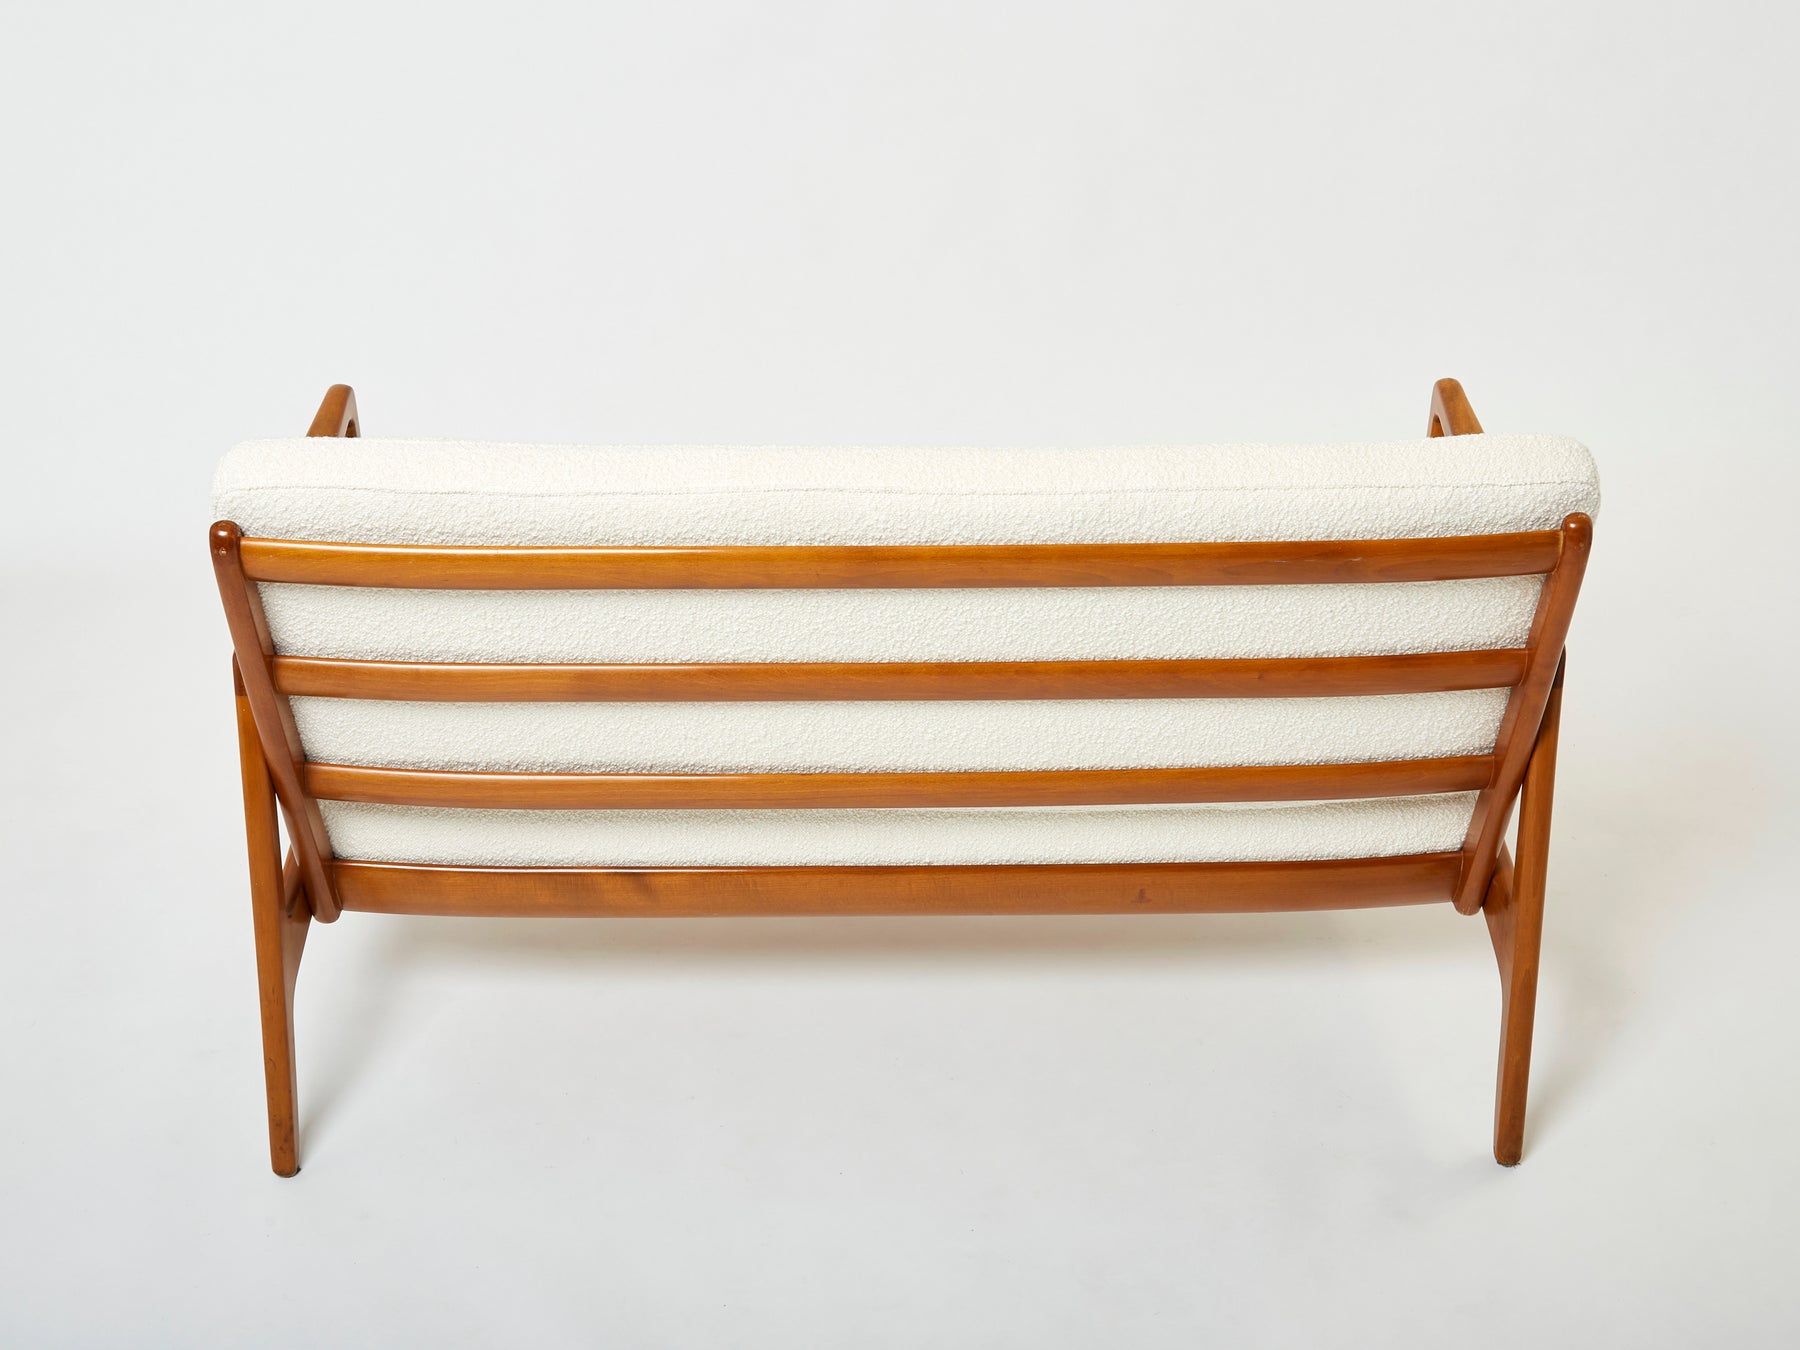 Scandinavian sofa by Ole Wanscher FD 109 wool bouclé 1960s